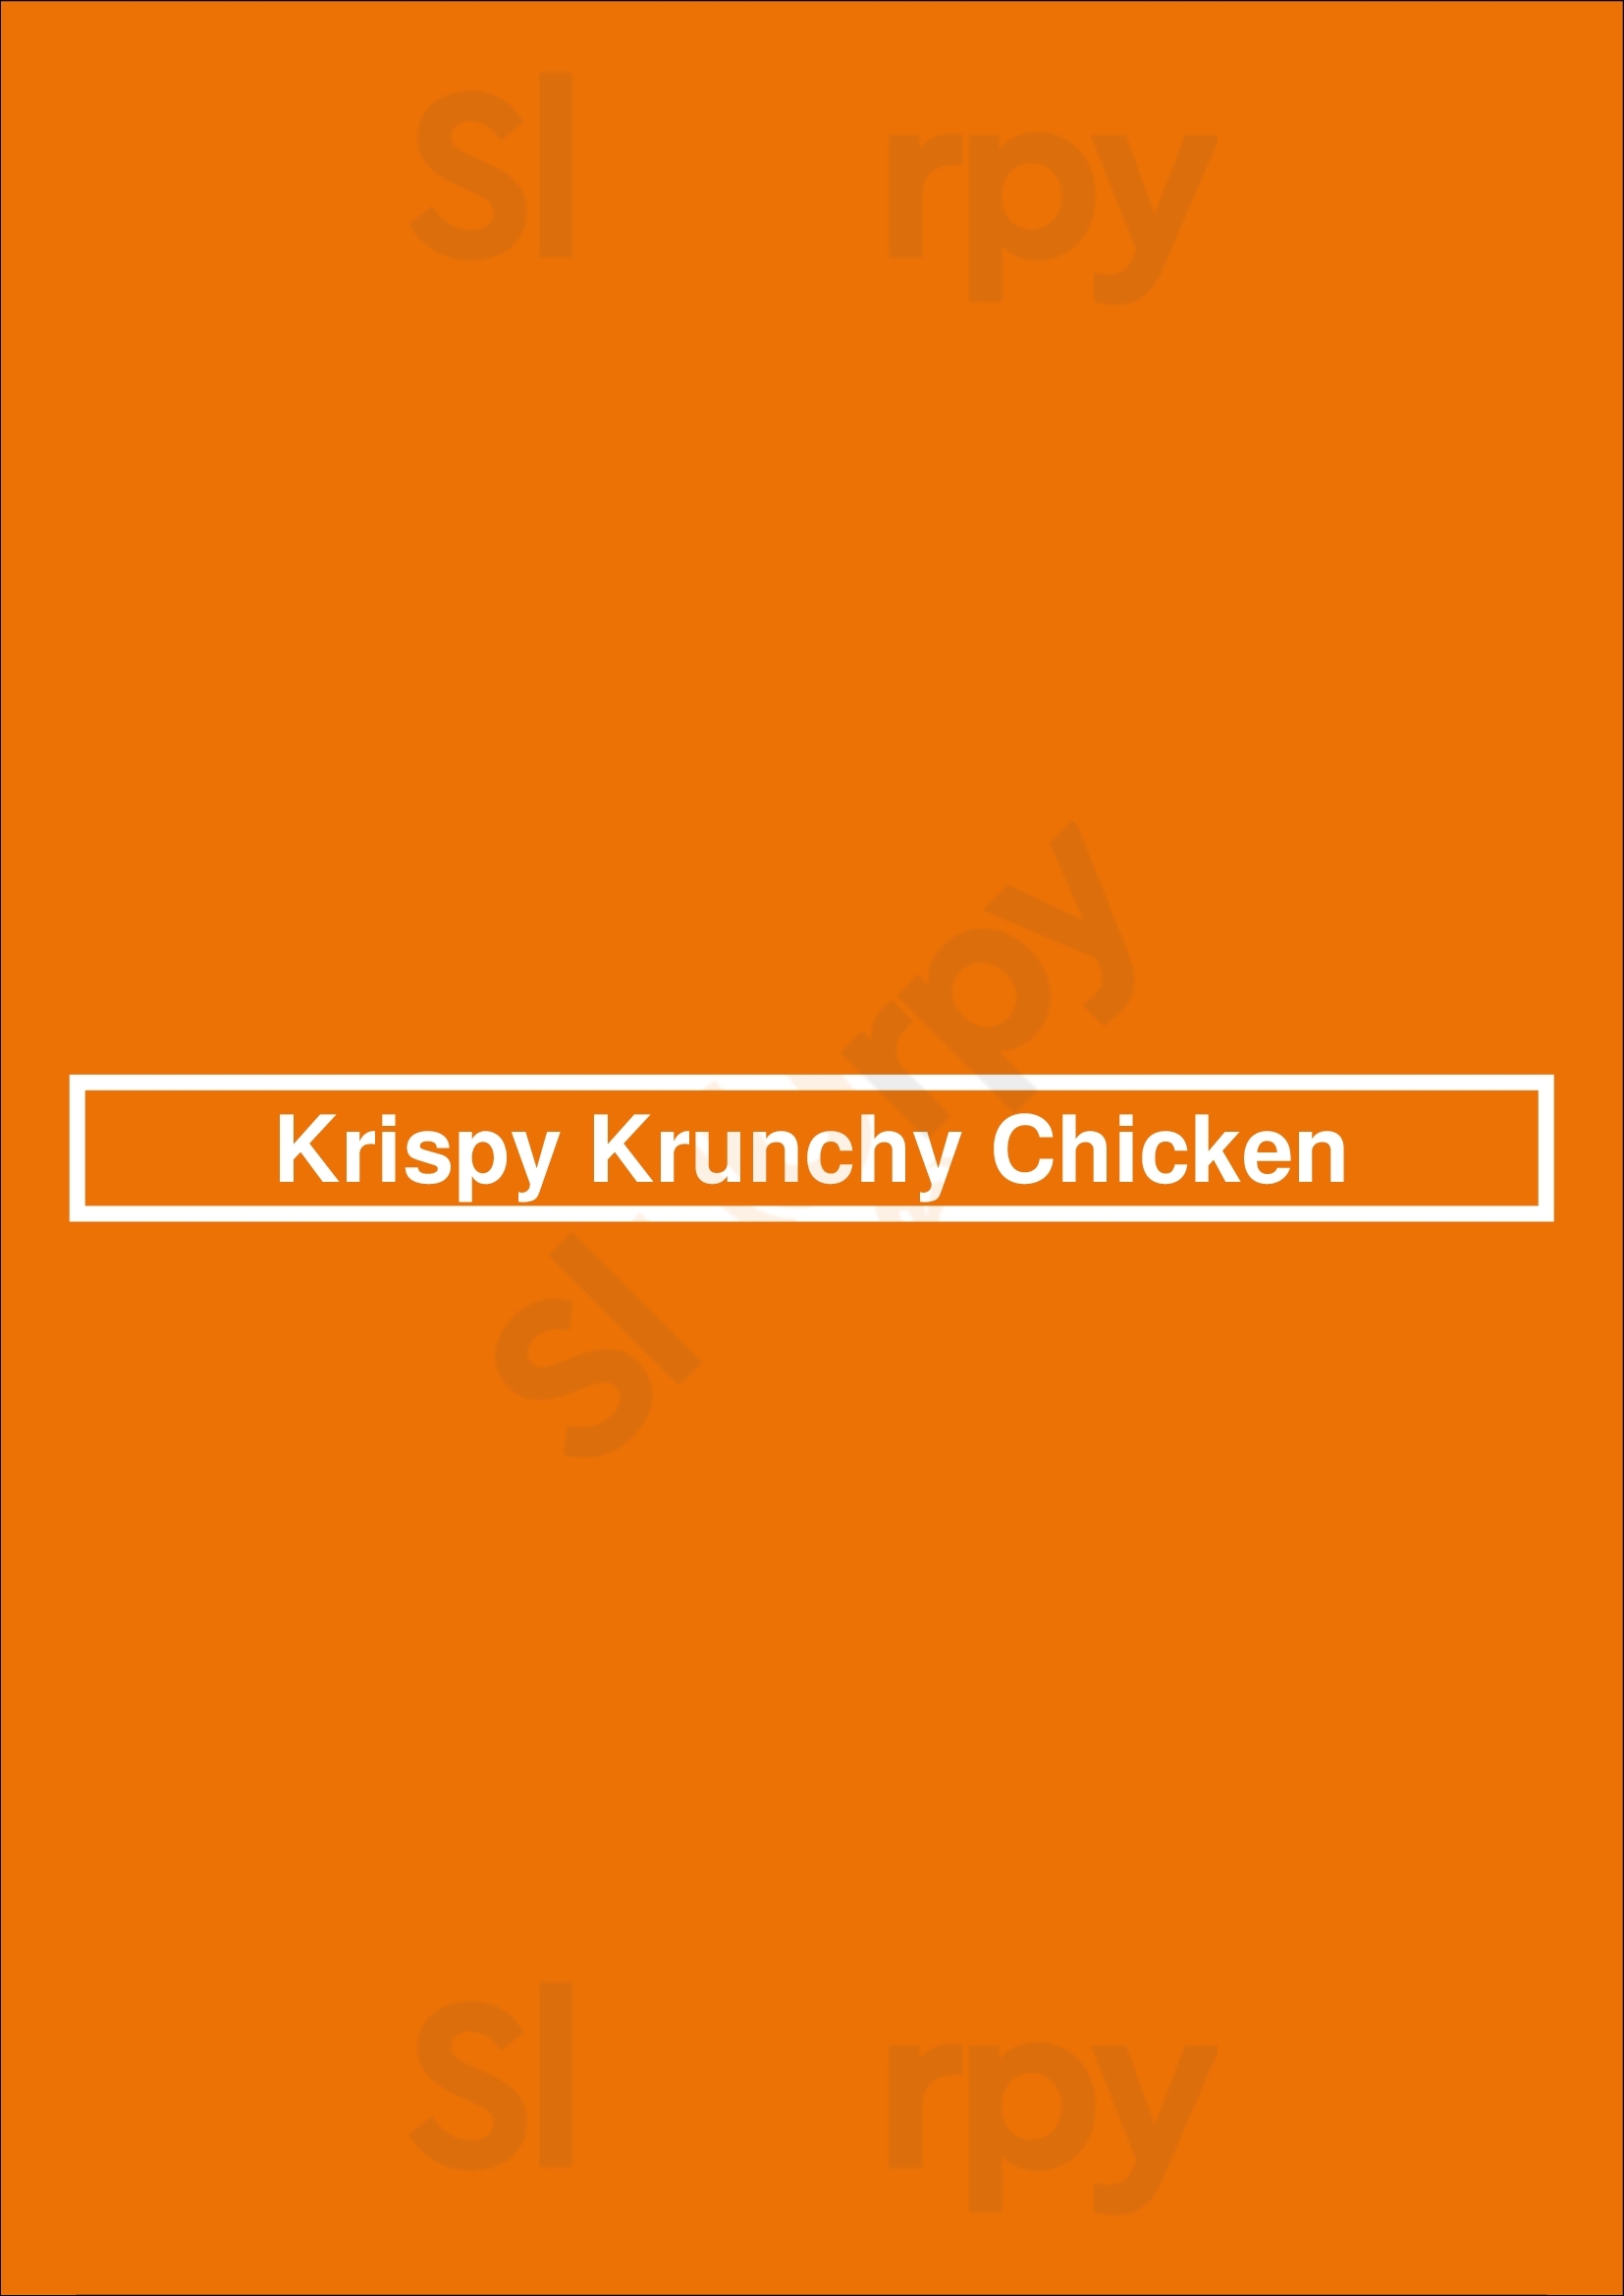 Krispy Krunchy Chicken Chicago Menu - 1